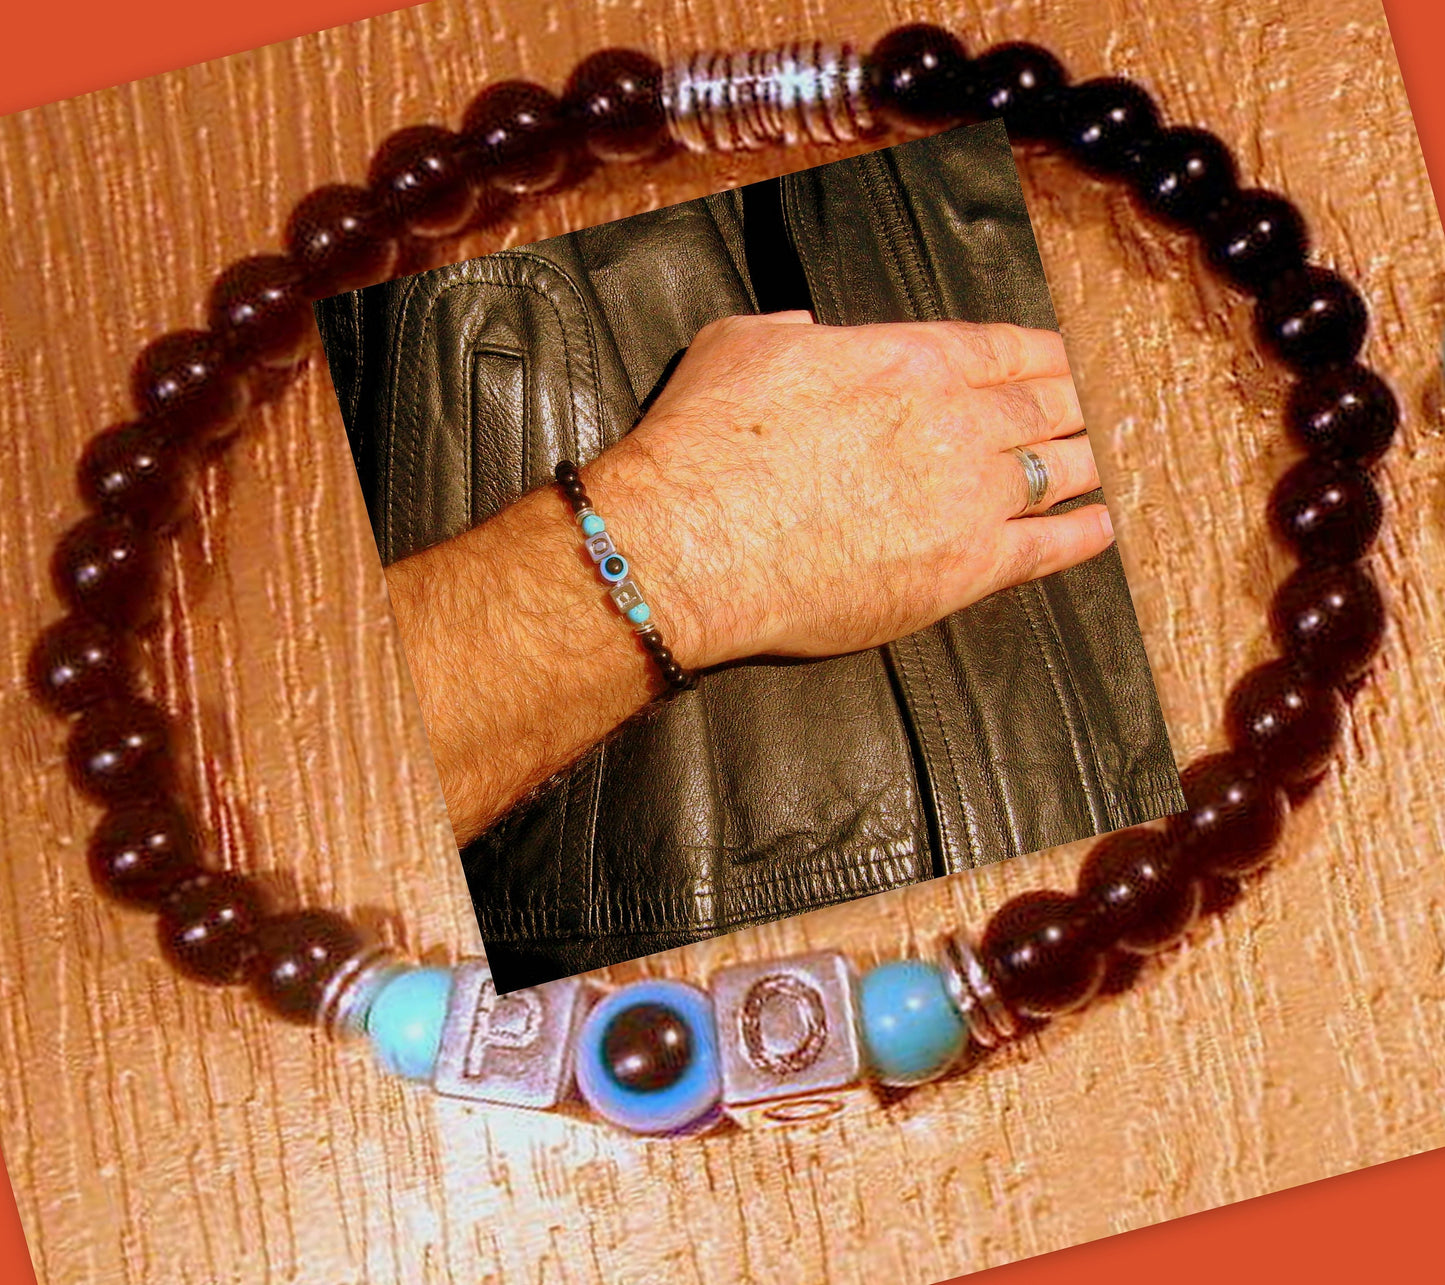 Men/ Woman Evil Eye stone Personalized BRACELET for Protection White shell Onyx Turquoise Lava hematite Handmade bracelet men gift